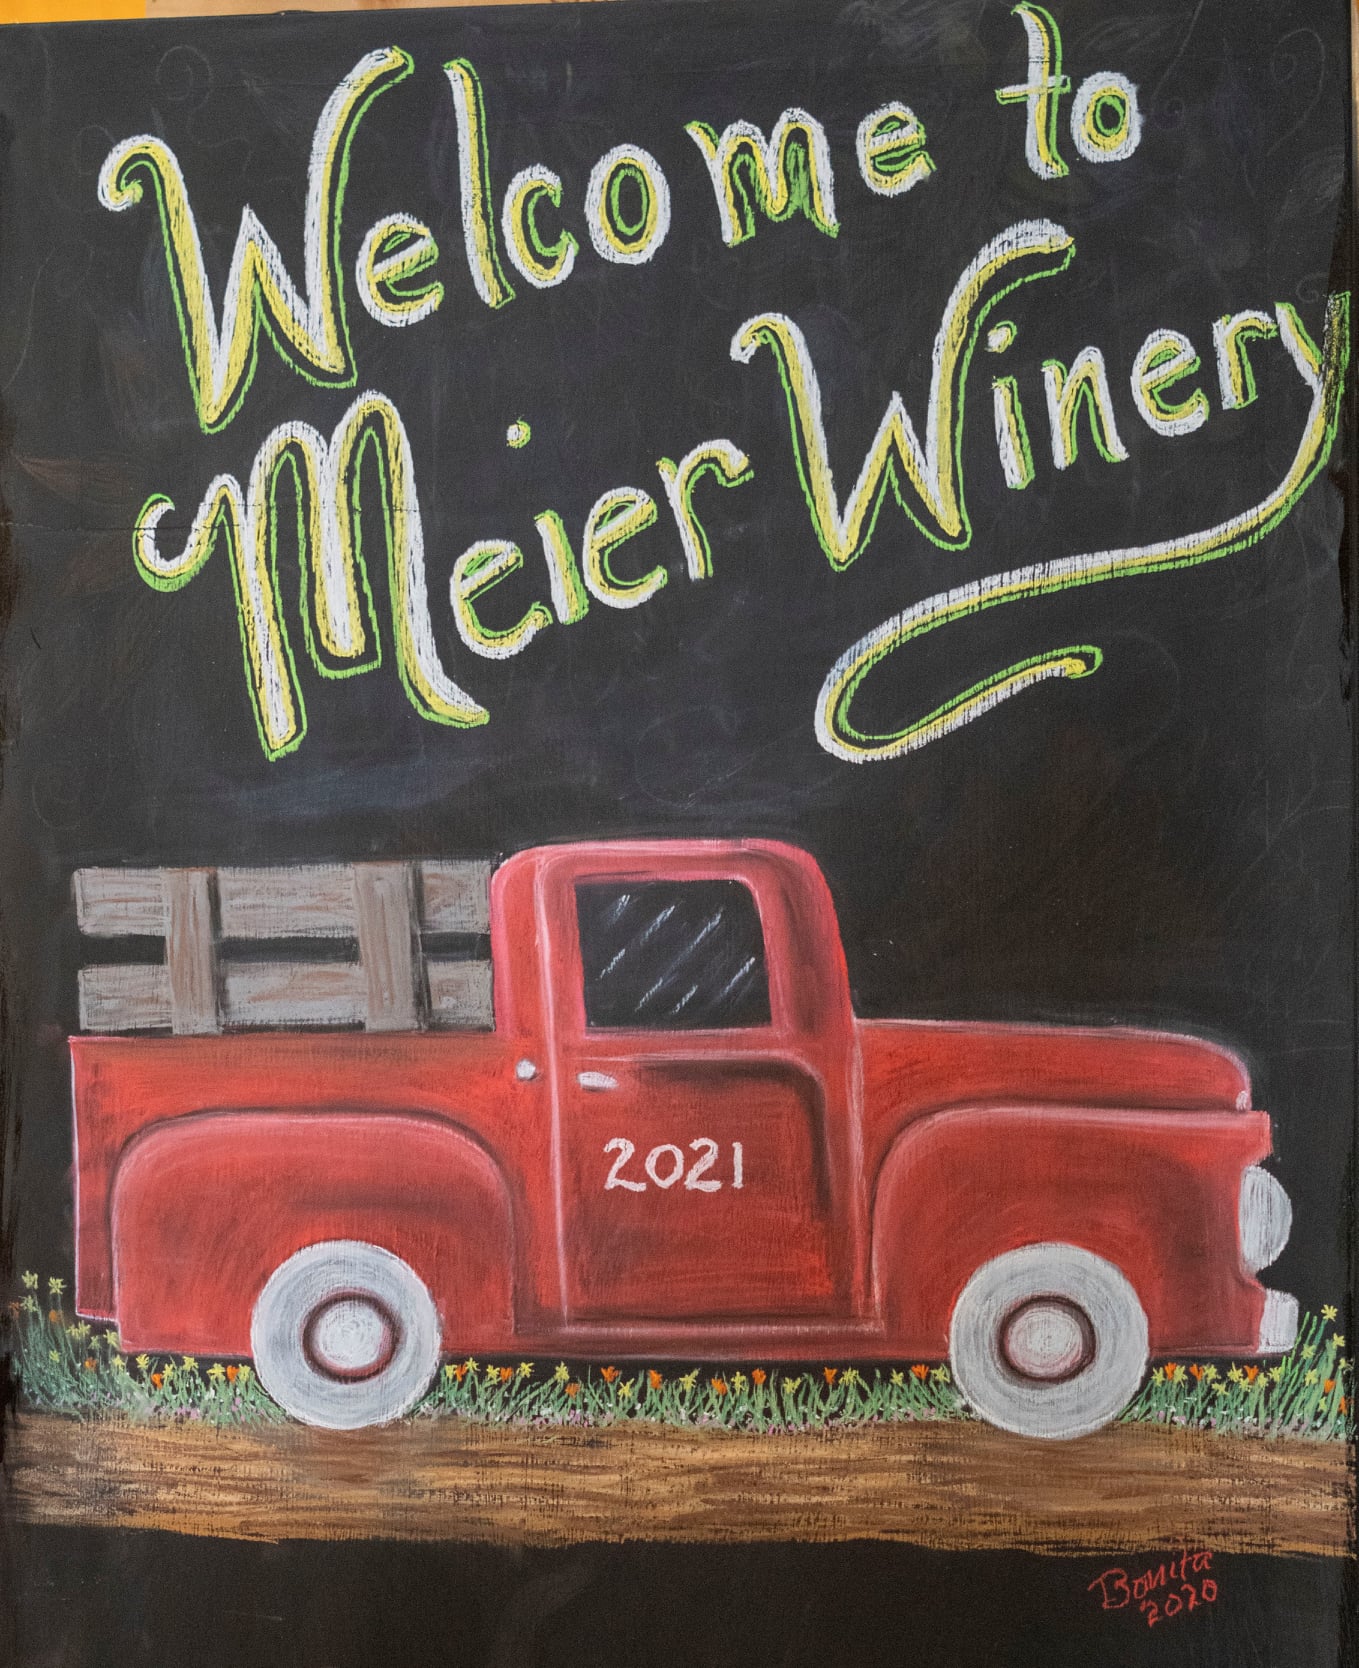 Meier Winery and Vinyard